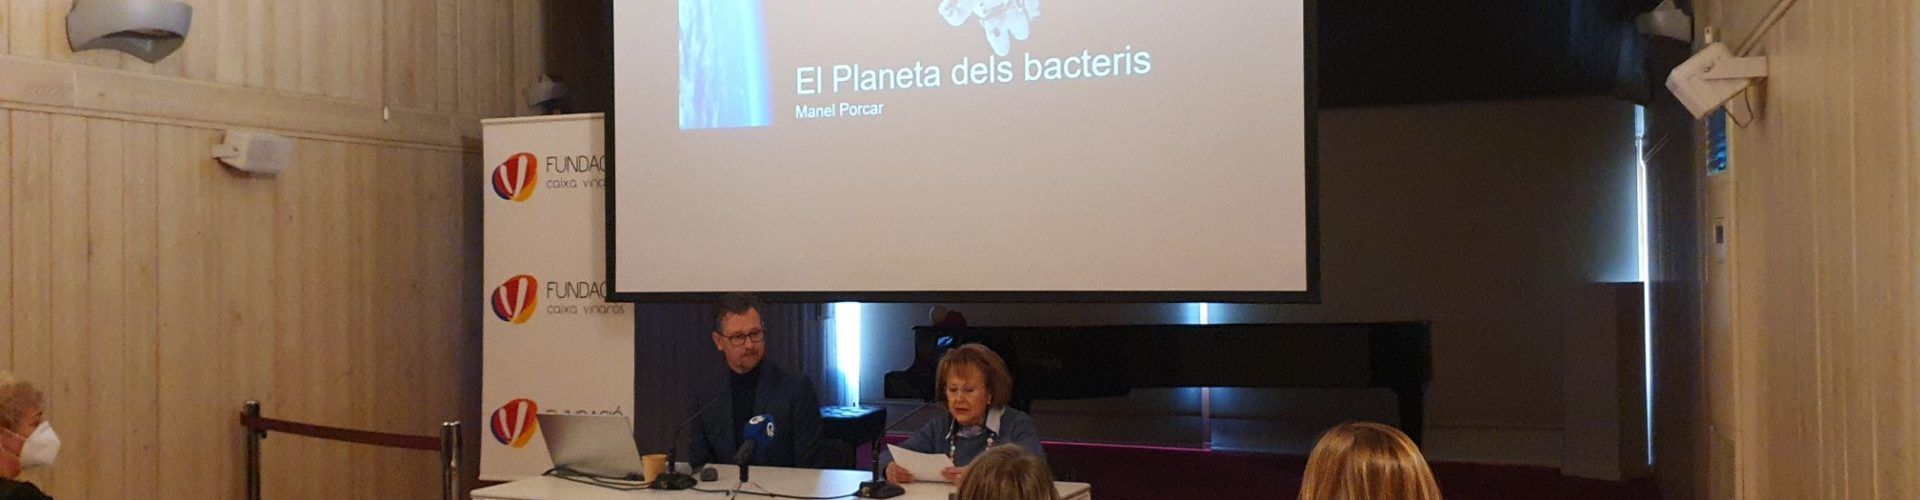 Vídeos i fotos:”El planeta dels bacteris” per Manuel Porcar